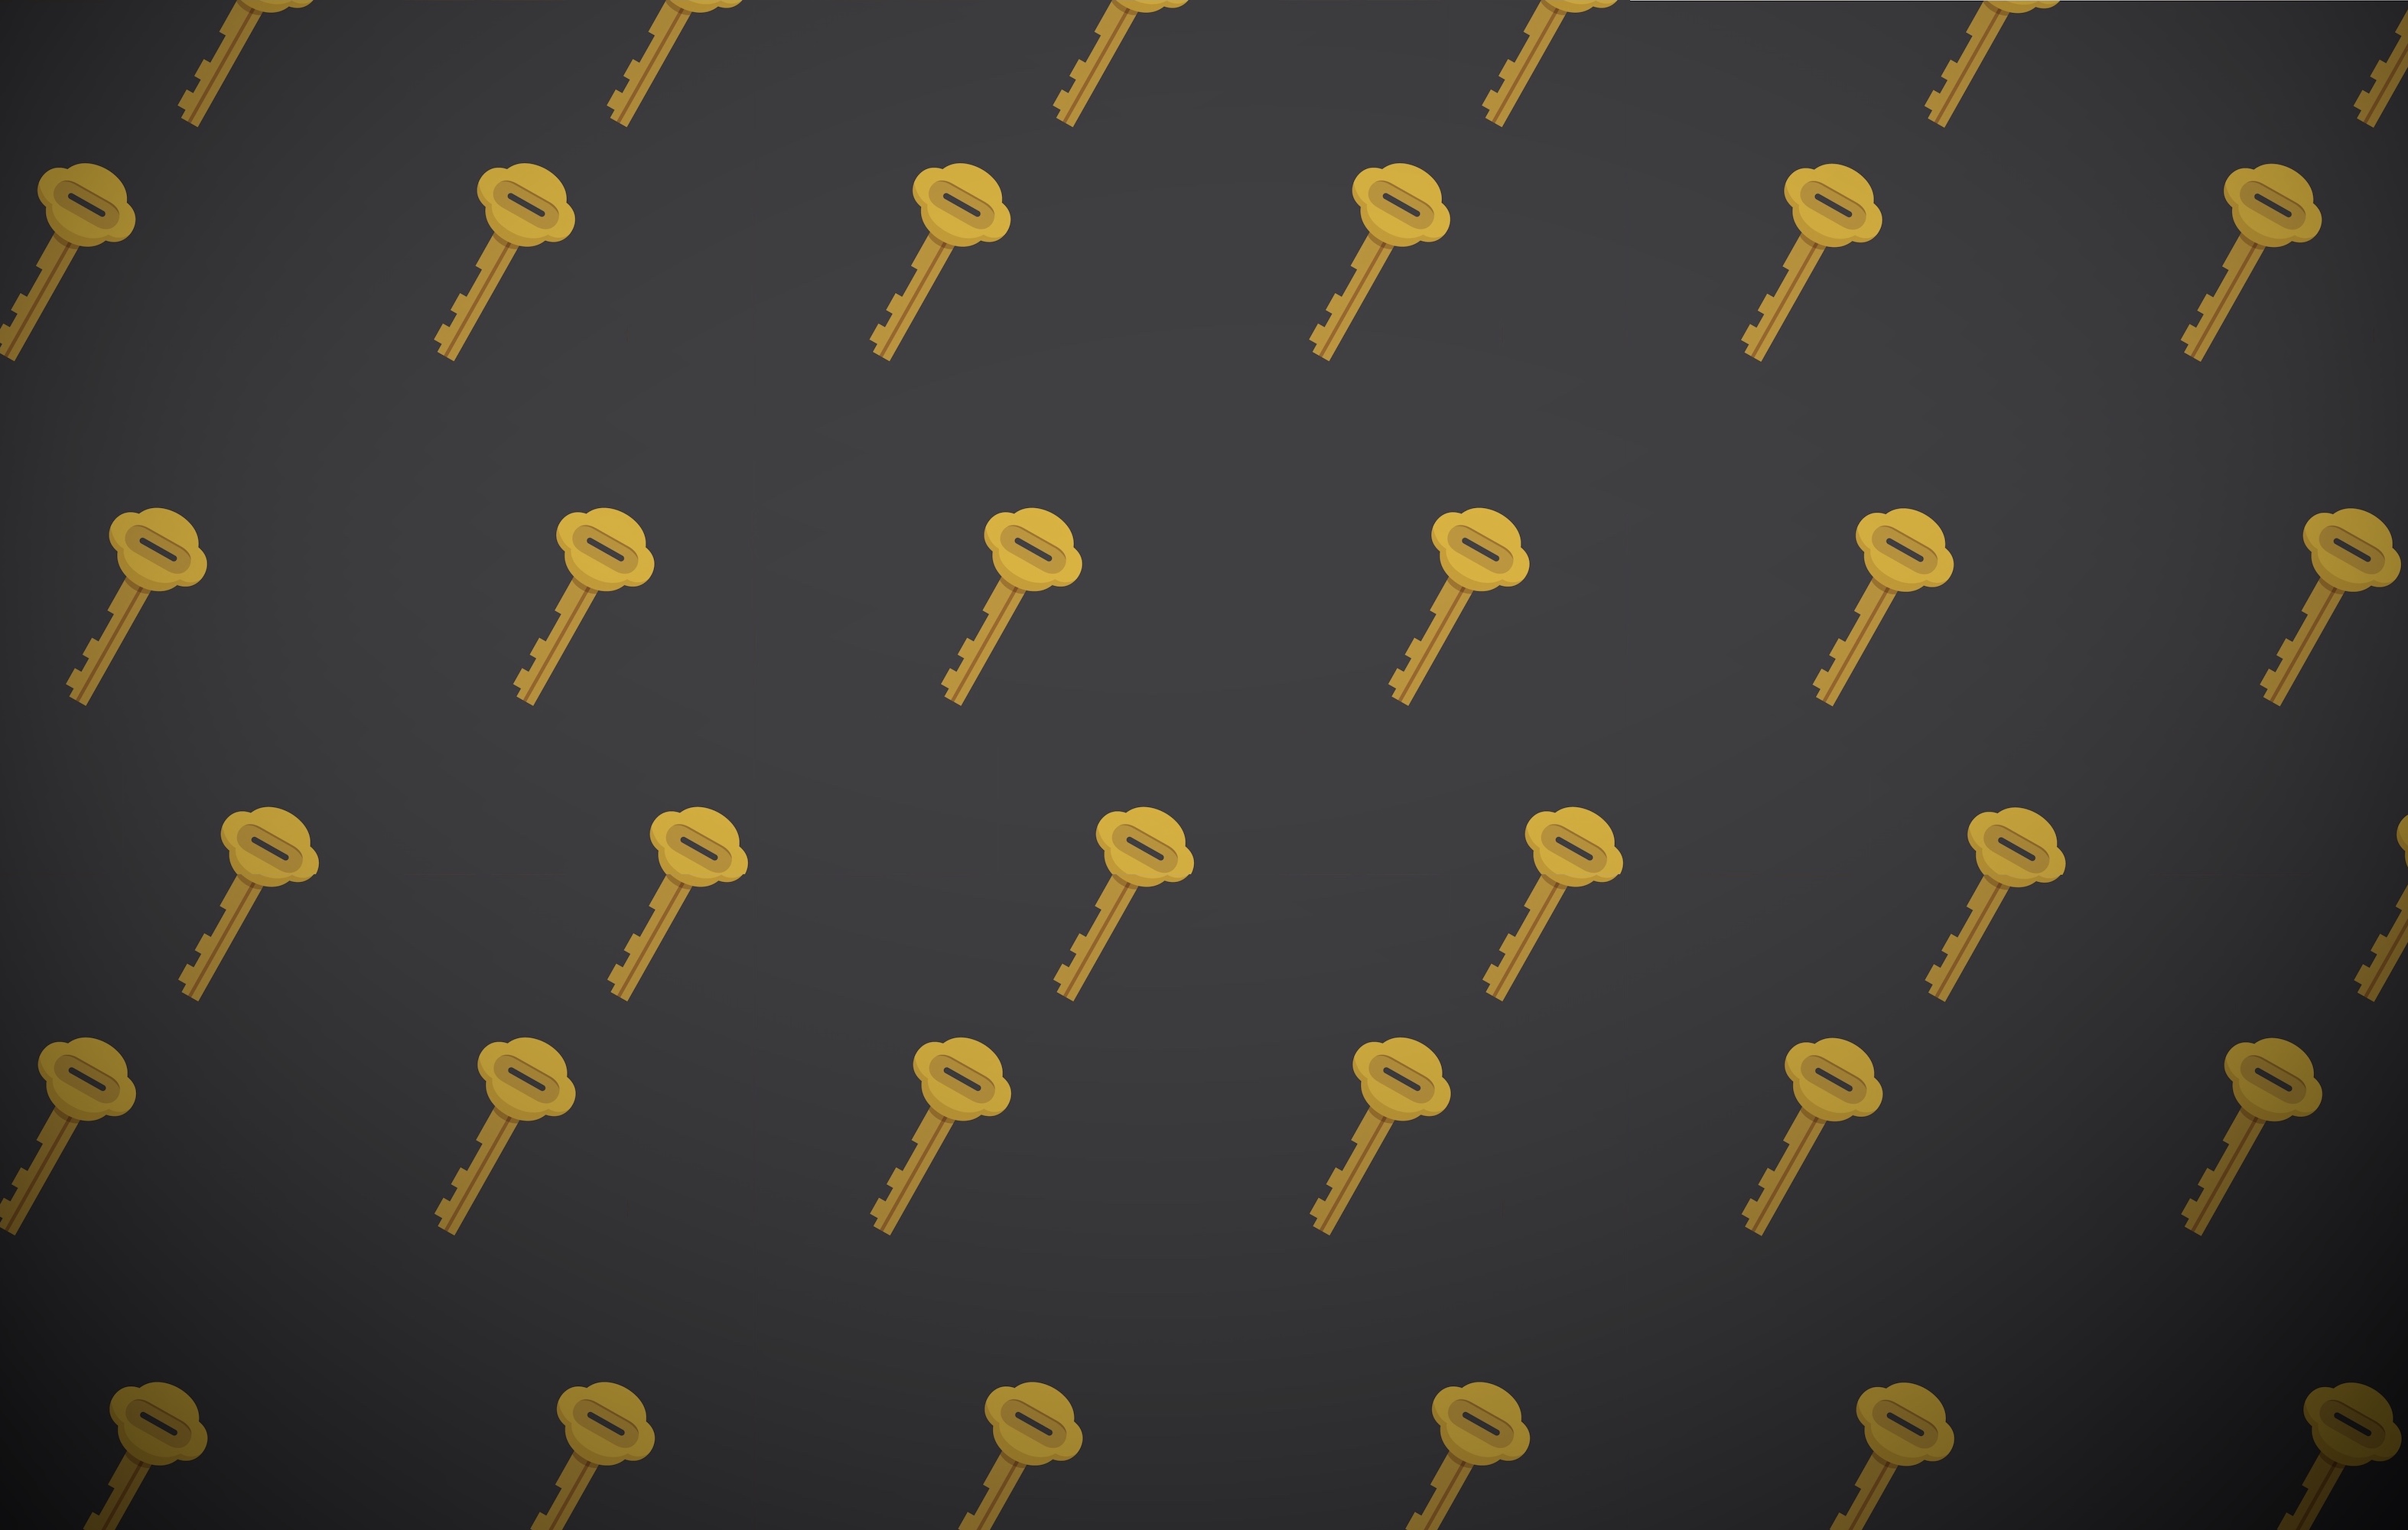 Keys on a dark patterned background